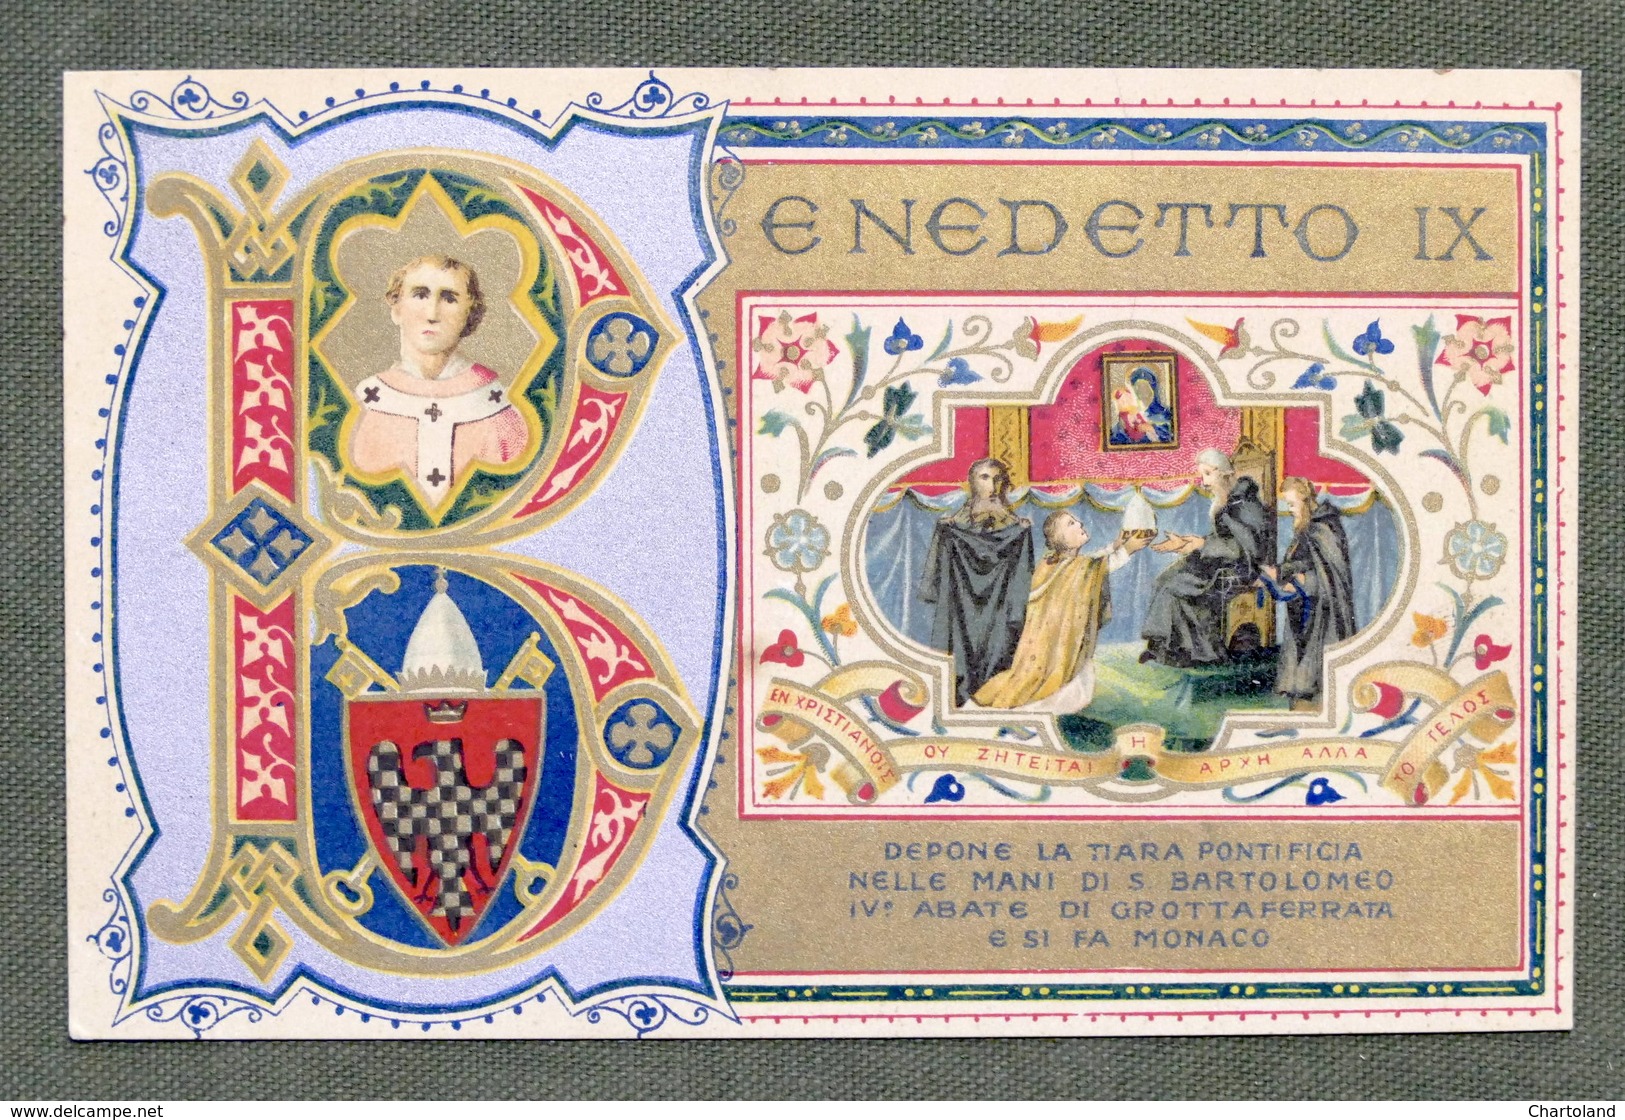 Cartolina Commemorativa - Benedetto IX Depone La Tiara Pontificia - 1905 - Non Classificati